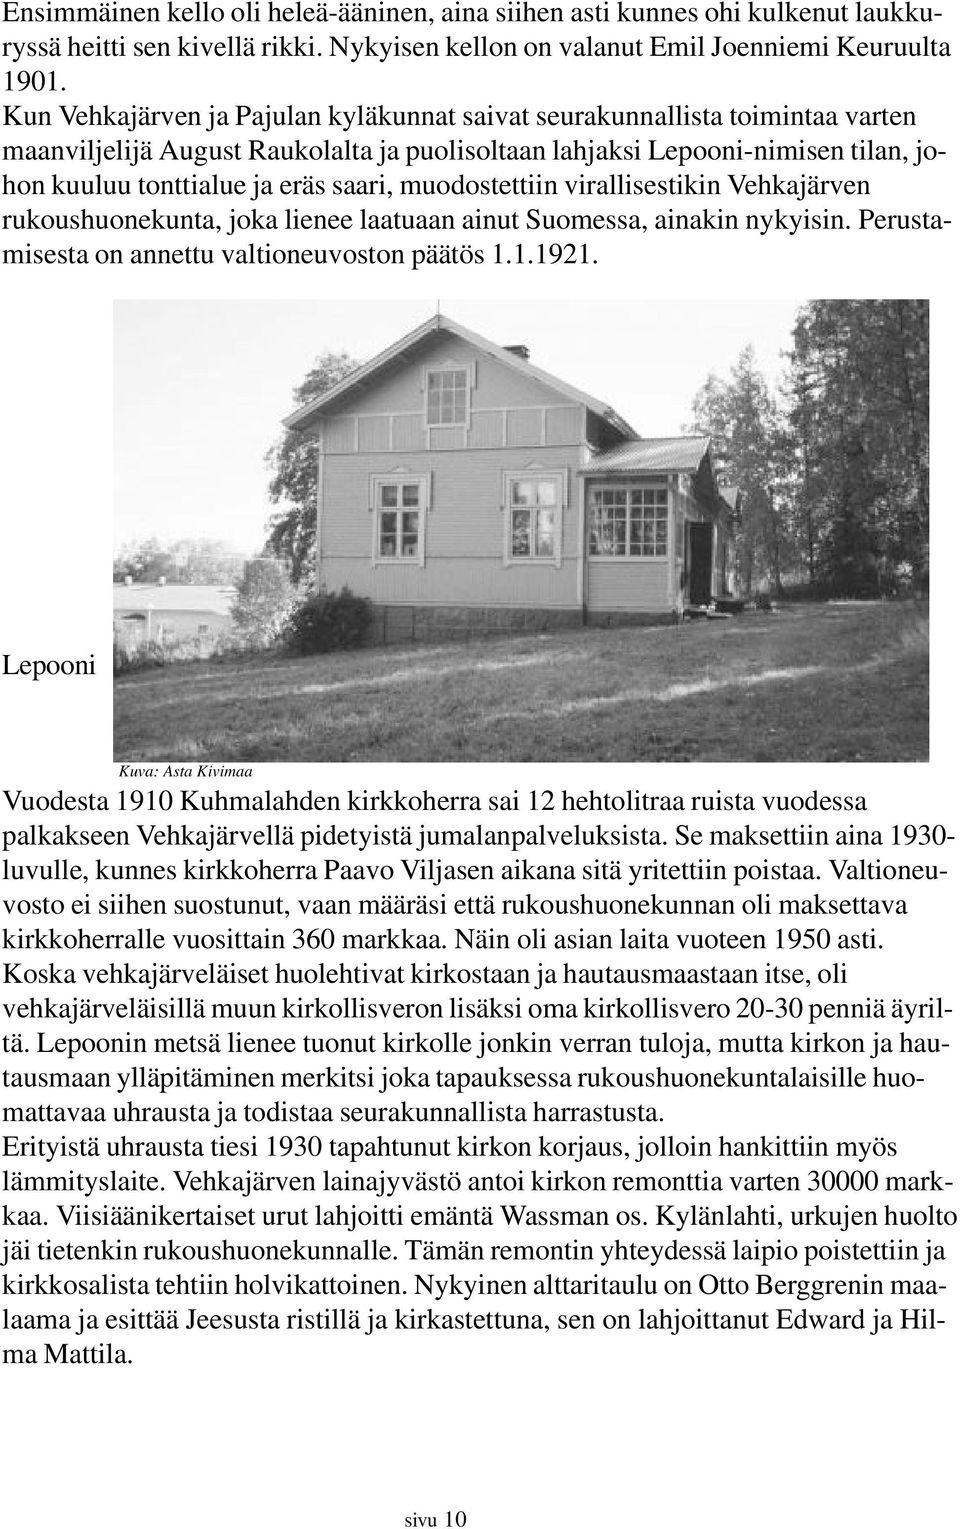 muodostettiin virallisestikin Vehkajärven rukoushuonekunta, joka lienee laatuaan ainut Suomessa, ainakin nykyisin. Perustamisesta on annettu valtioneuvoston päätös 1.1.1921.